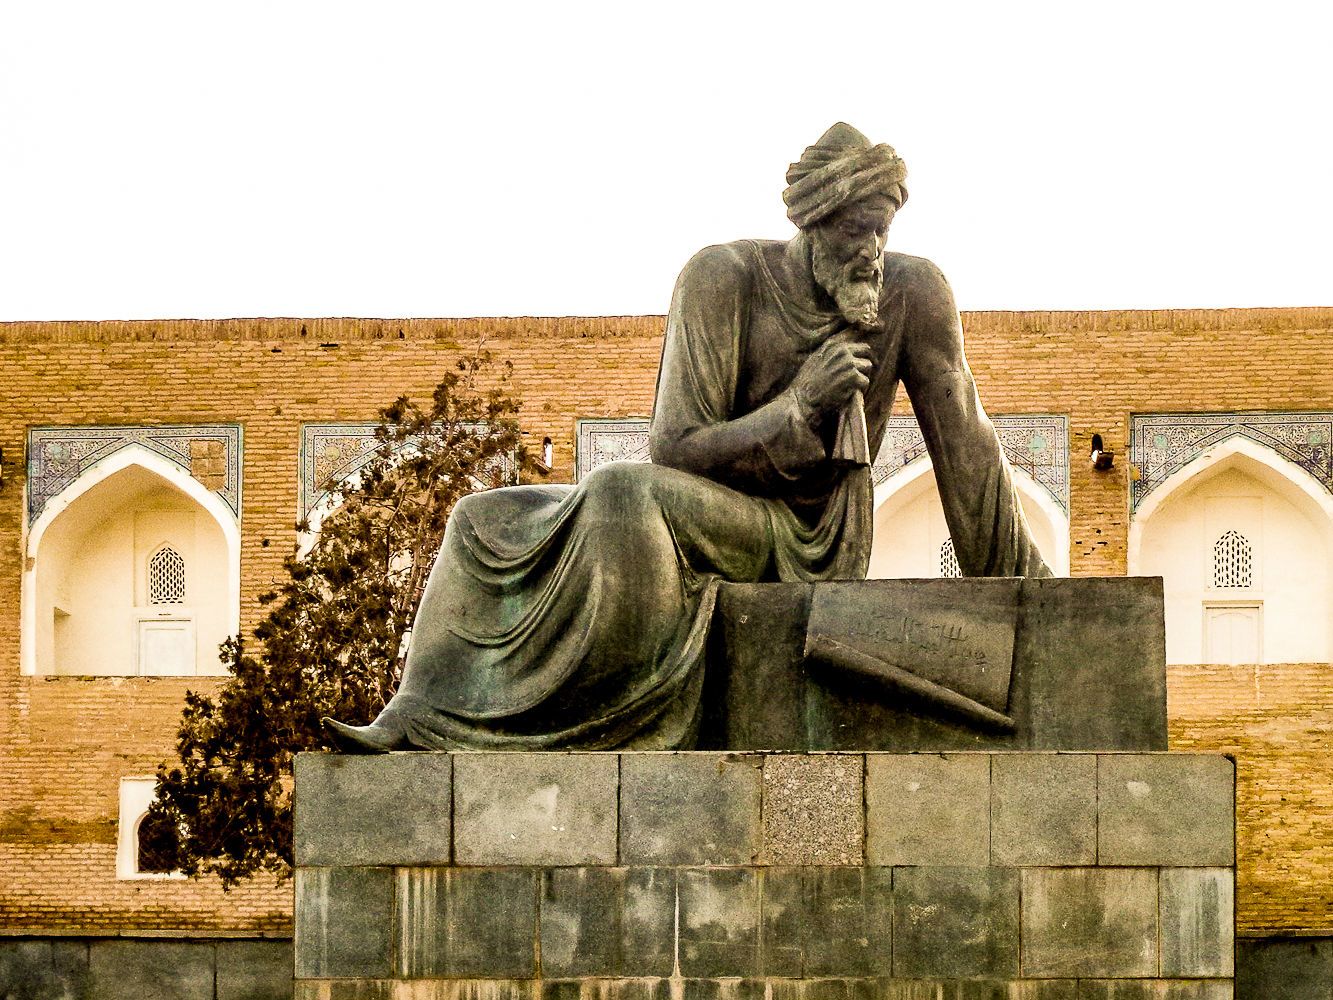 Al-Khorezm-statue-Khiva-Uzbekistan-inventor-algebra